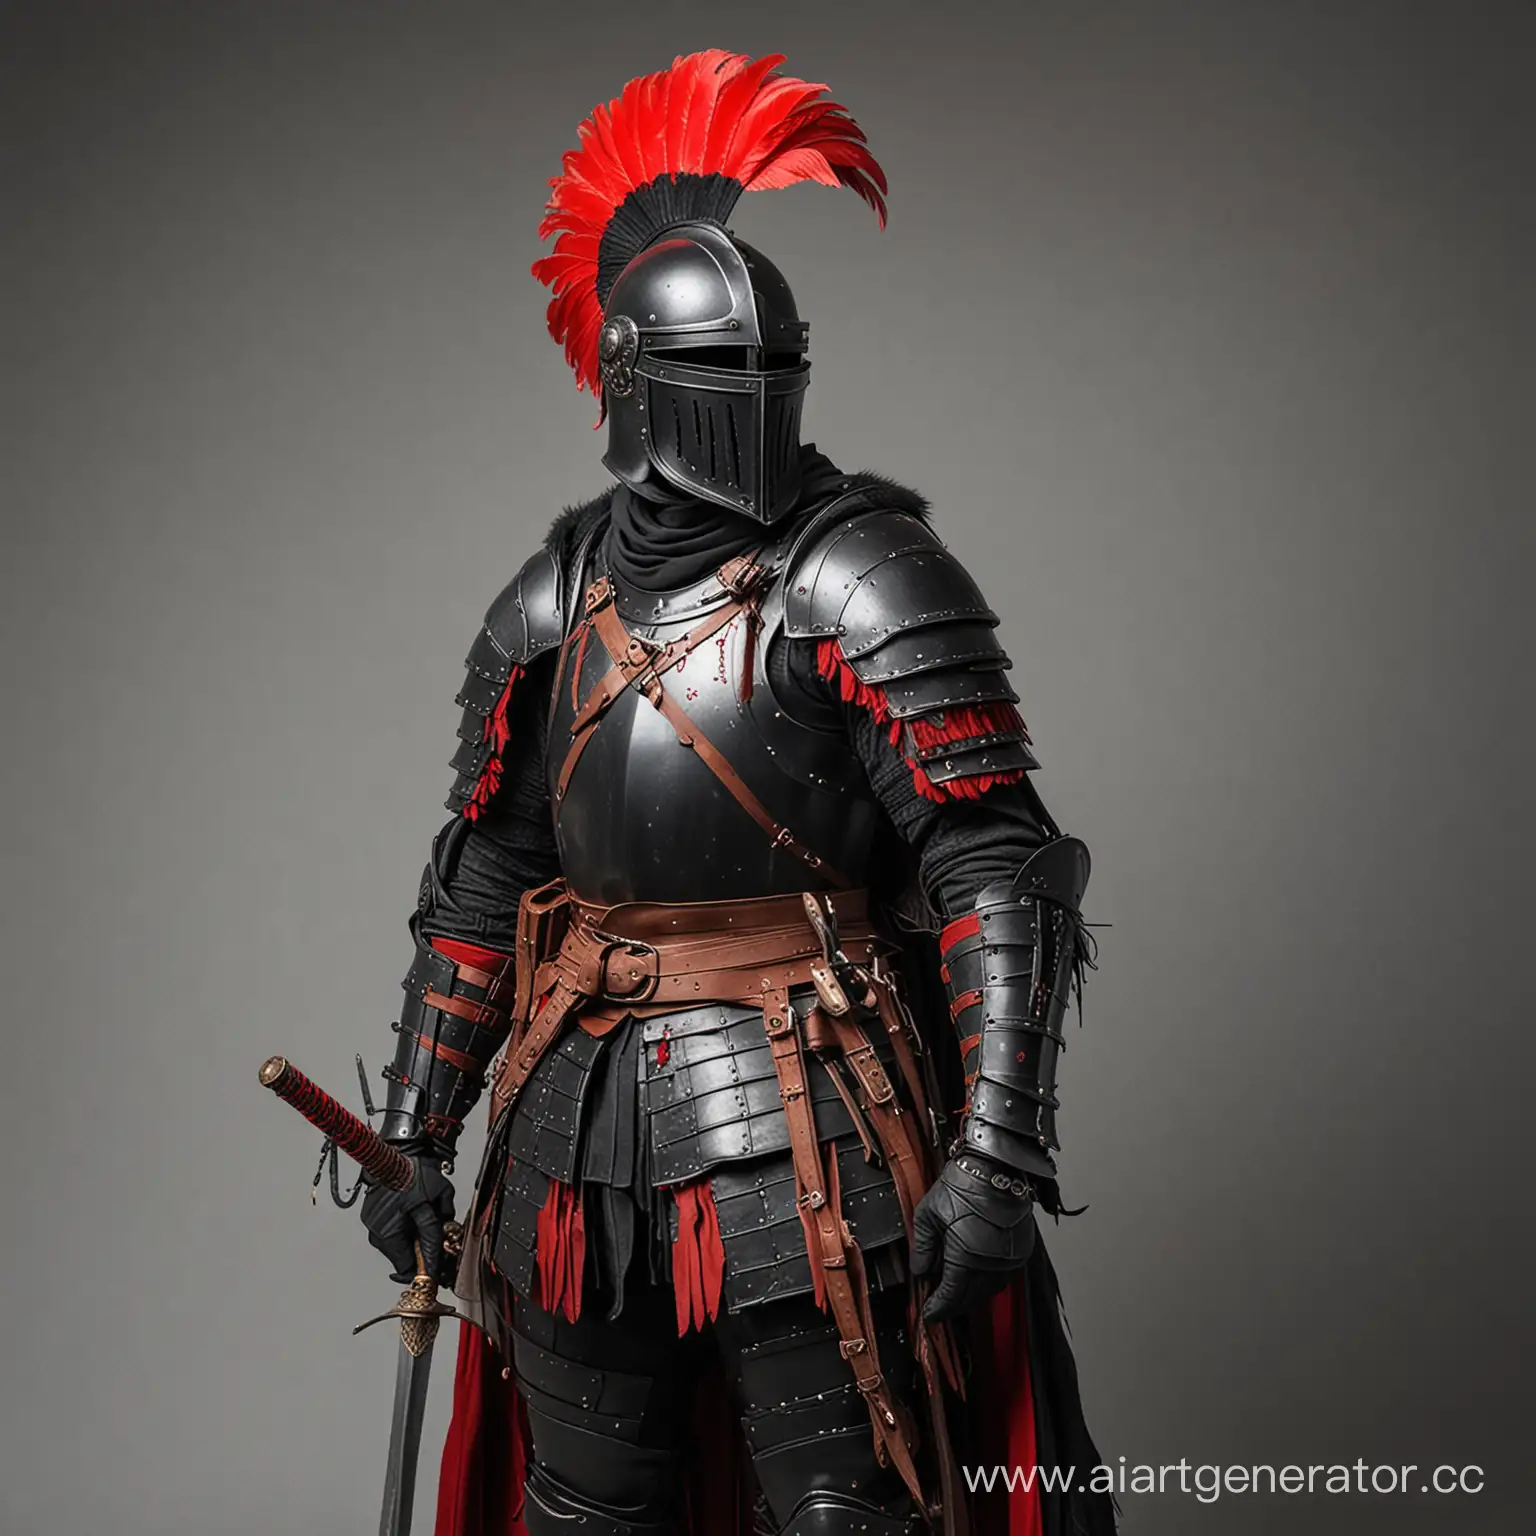 Рыцарь в черных доспехах, с закрытым черным шлемом на вершине которого закреплено длинное красное перо. На спине находится длинный меч в ножнах. На поясе находится несколько подсумков.